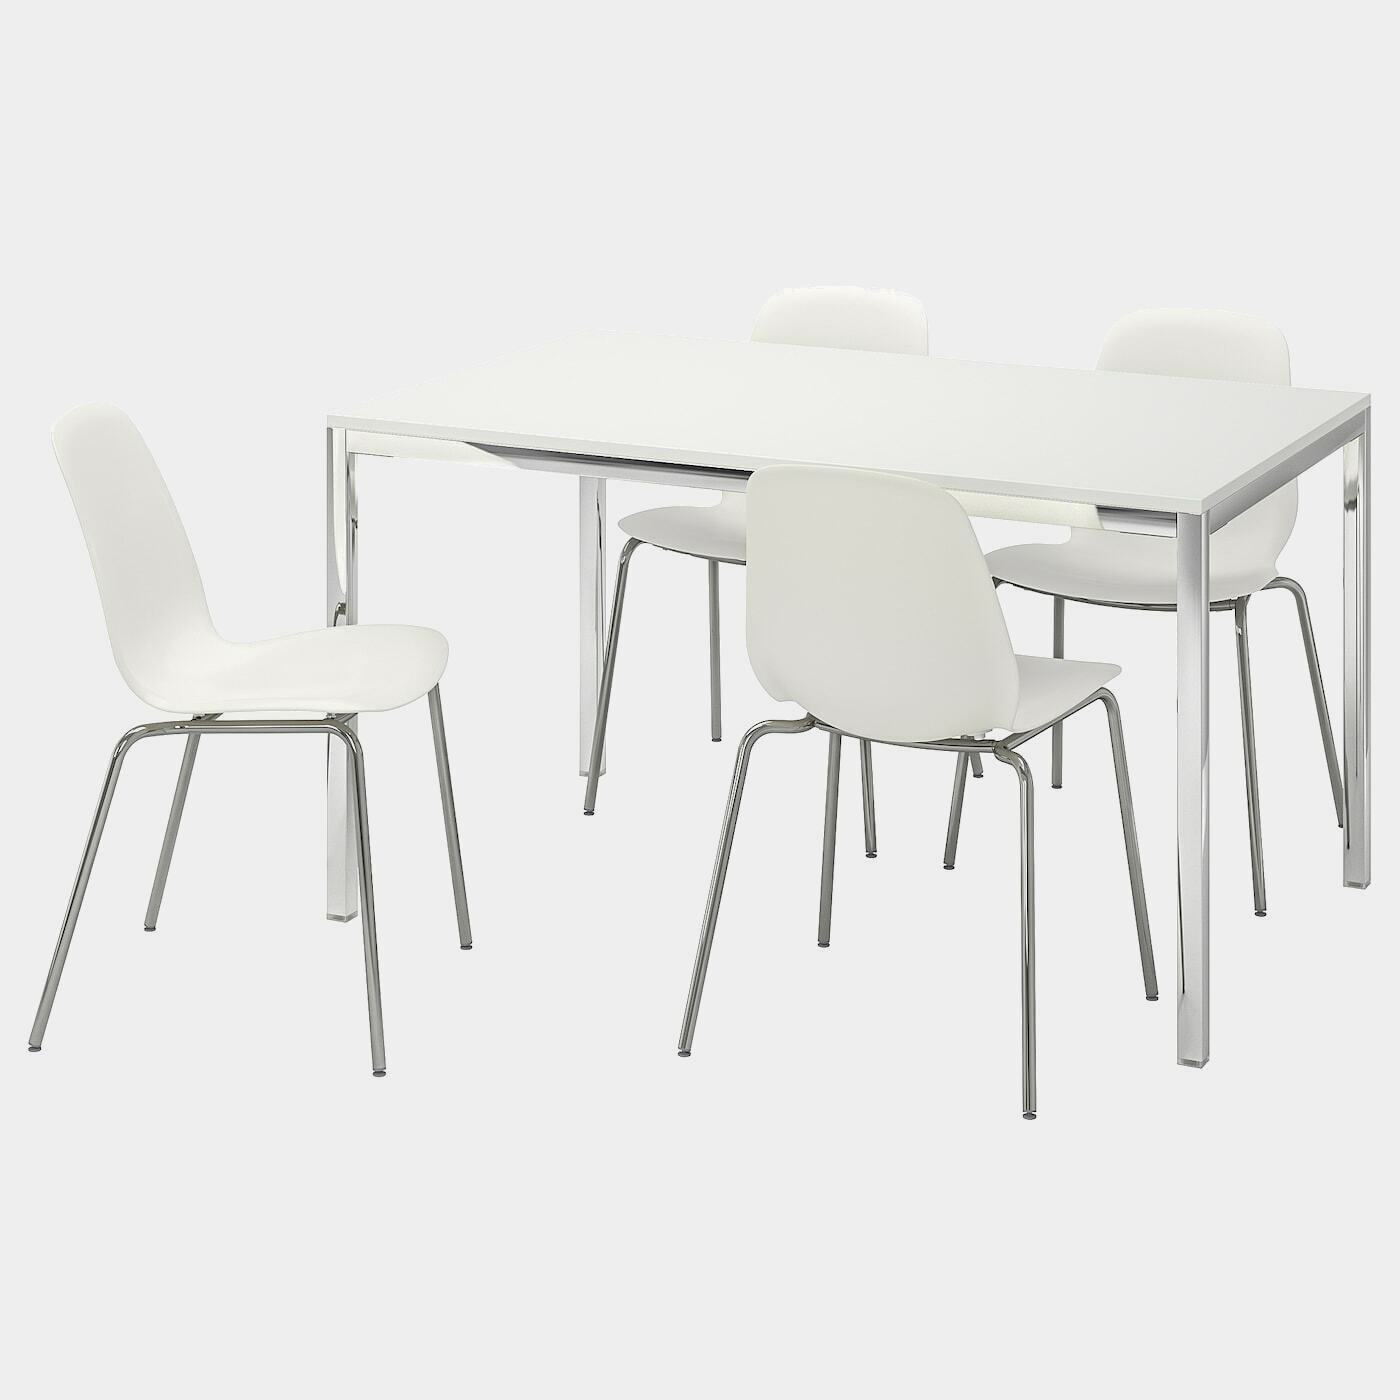 TORSBY / LEIFARNE Tisch und 4 Stühle  - Essplatzgruppe - Möbel Ideen für dein Zuhause von Home Trends. Möbel Trends von Social Media Influencer für dein Skandi Zuhause.